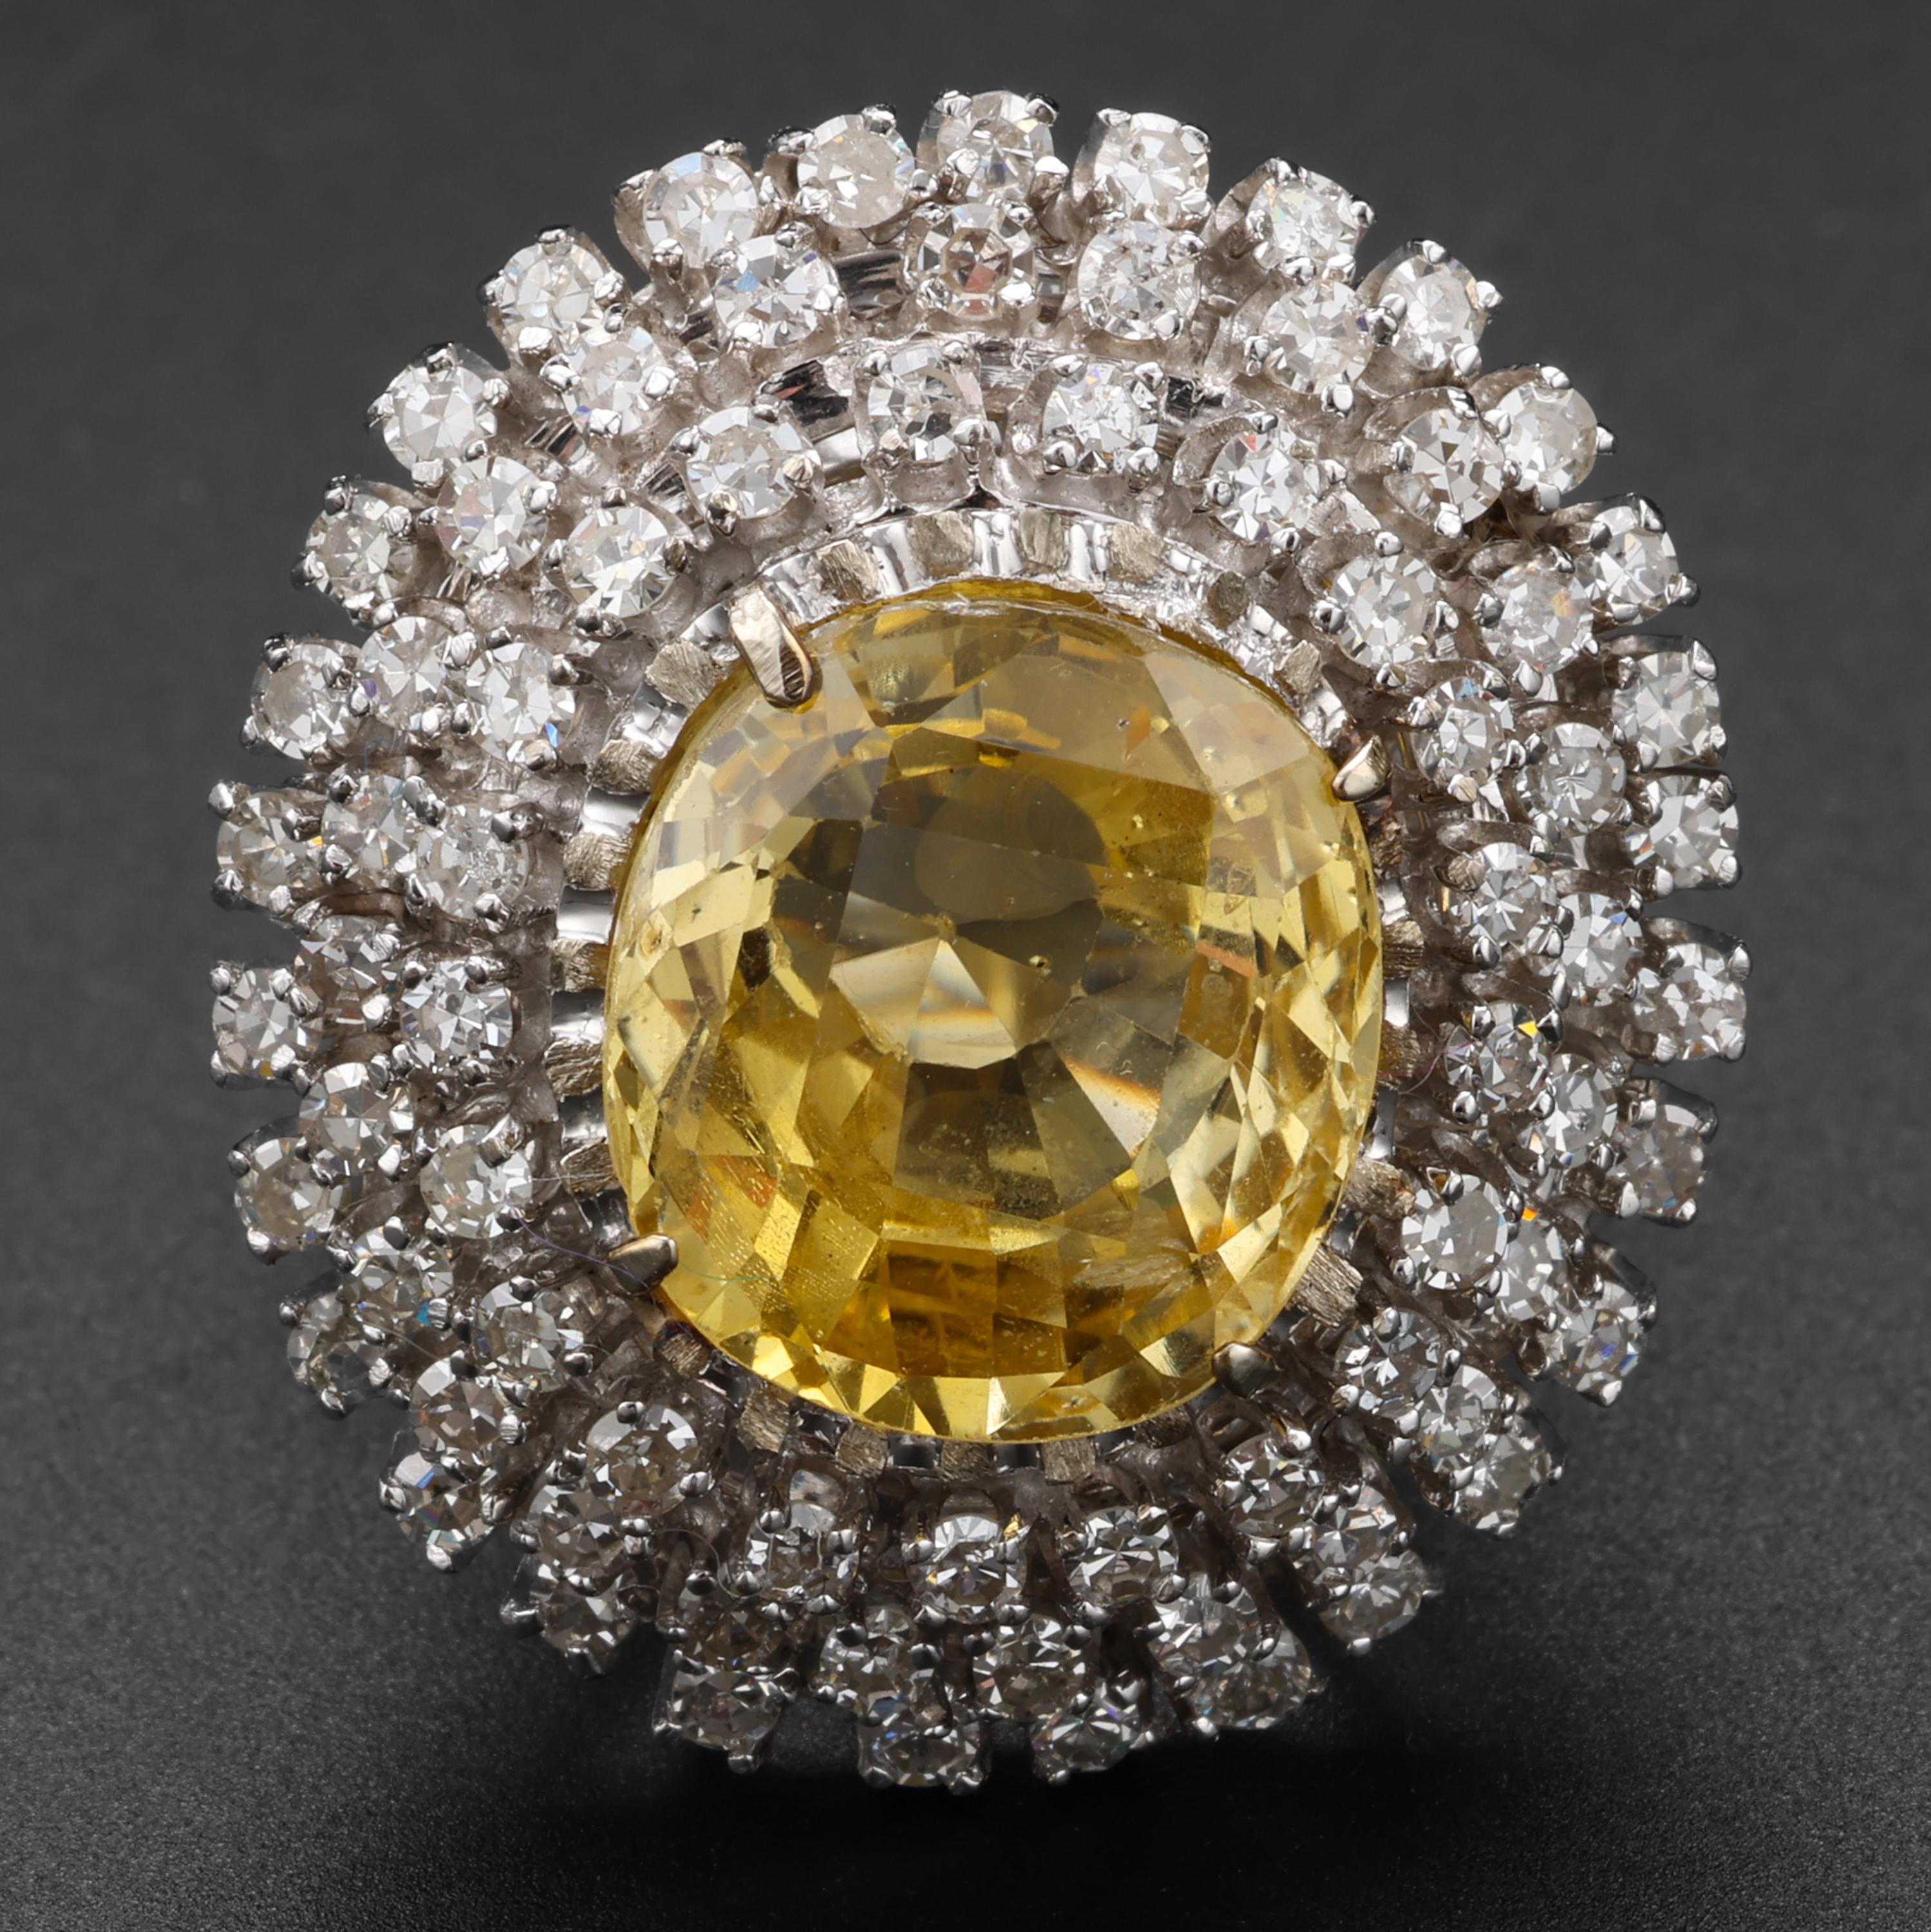 Un saphir jaune canari absolument magnifique, pesant 12,5 carats, est entouré de trois halos de diamants flamboyants pour une bague Retro d'une beauté hypnotique. Les 75 diamants blancs, d'une pureté irréprochable, pèsent au total environ 1,5